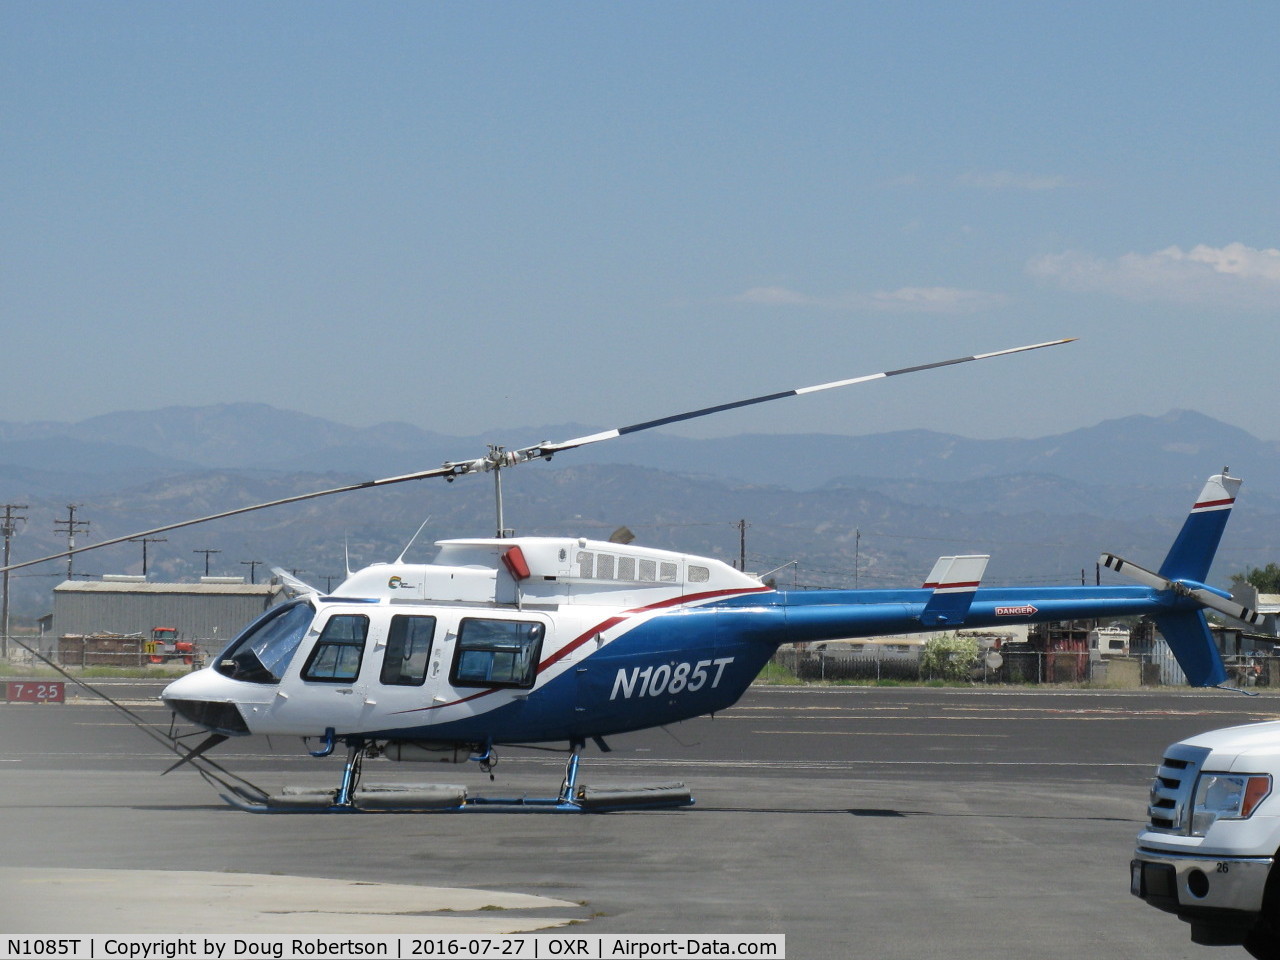 N1085T, 1980 Bell 206L-1 LongRanger II C/N 45376, 1980 Bell 206L-1 LongRanger II, one Allison 250-C28B Turboshaft 500 shp, on Aspen's ramp